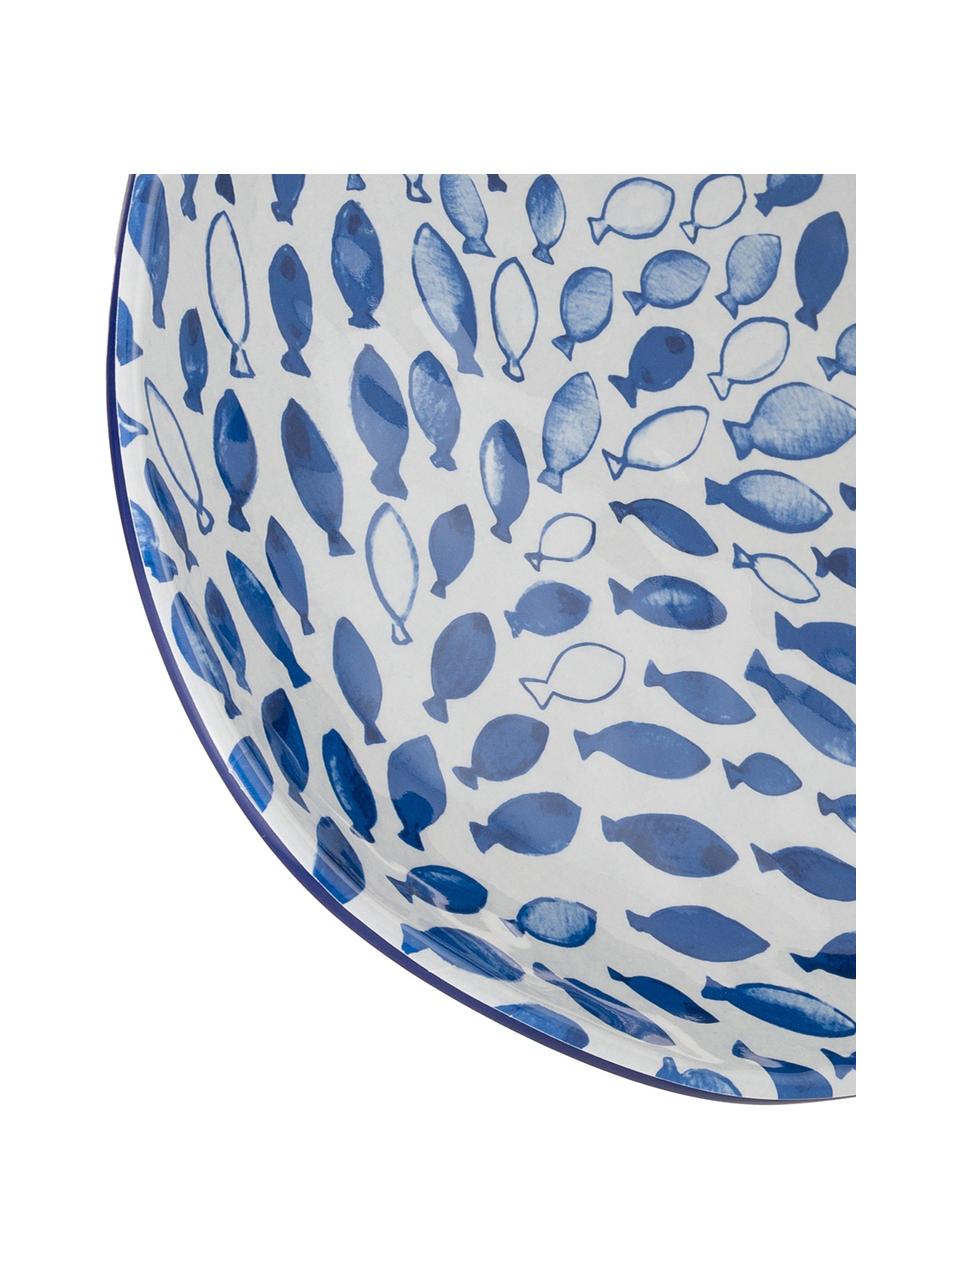 Vzorovaný melaminový servírovací talíř Vassoio, D 52 cm x Š 30 cm, Modrá, bílá